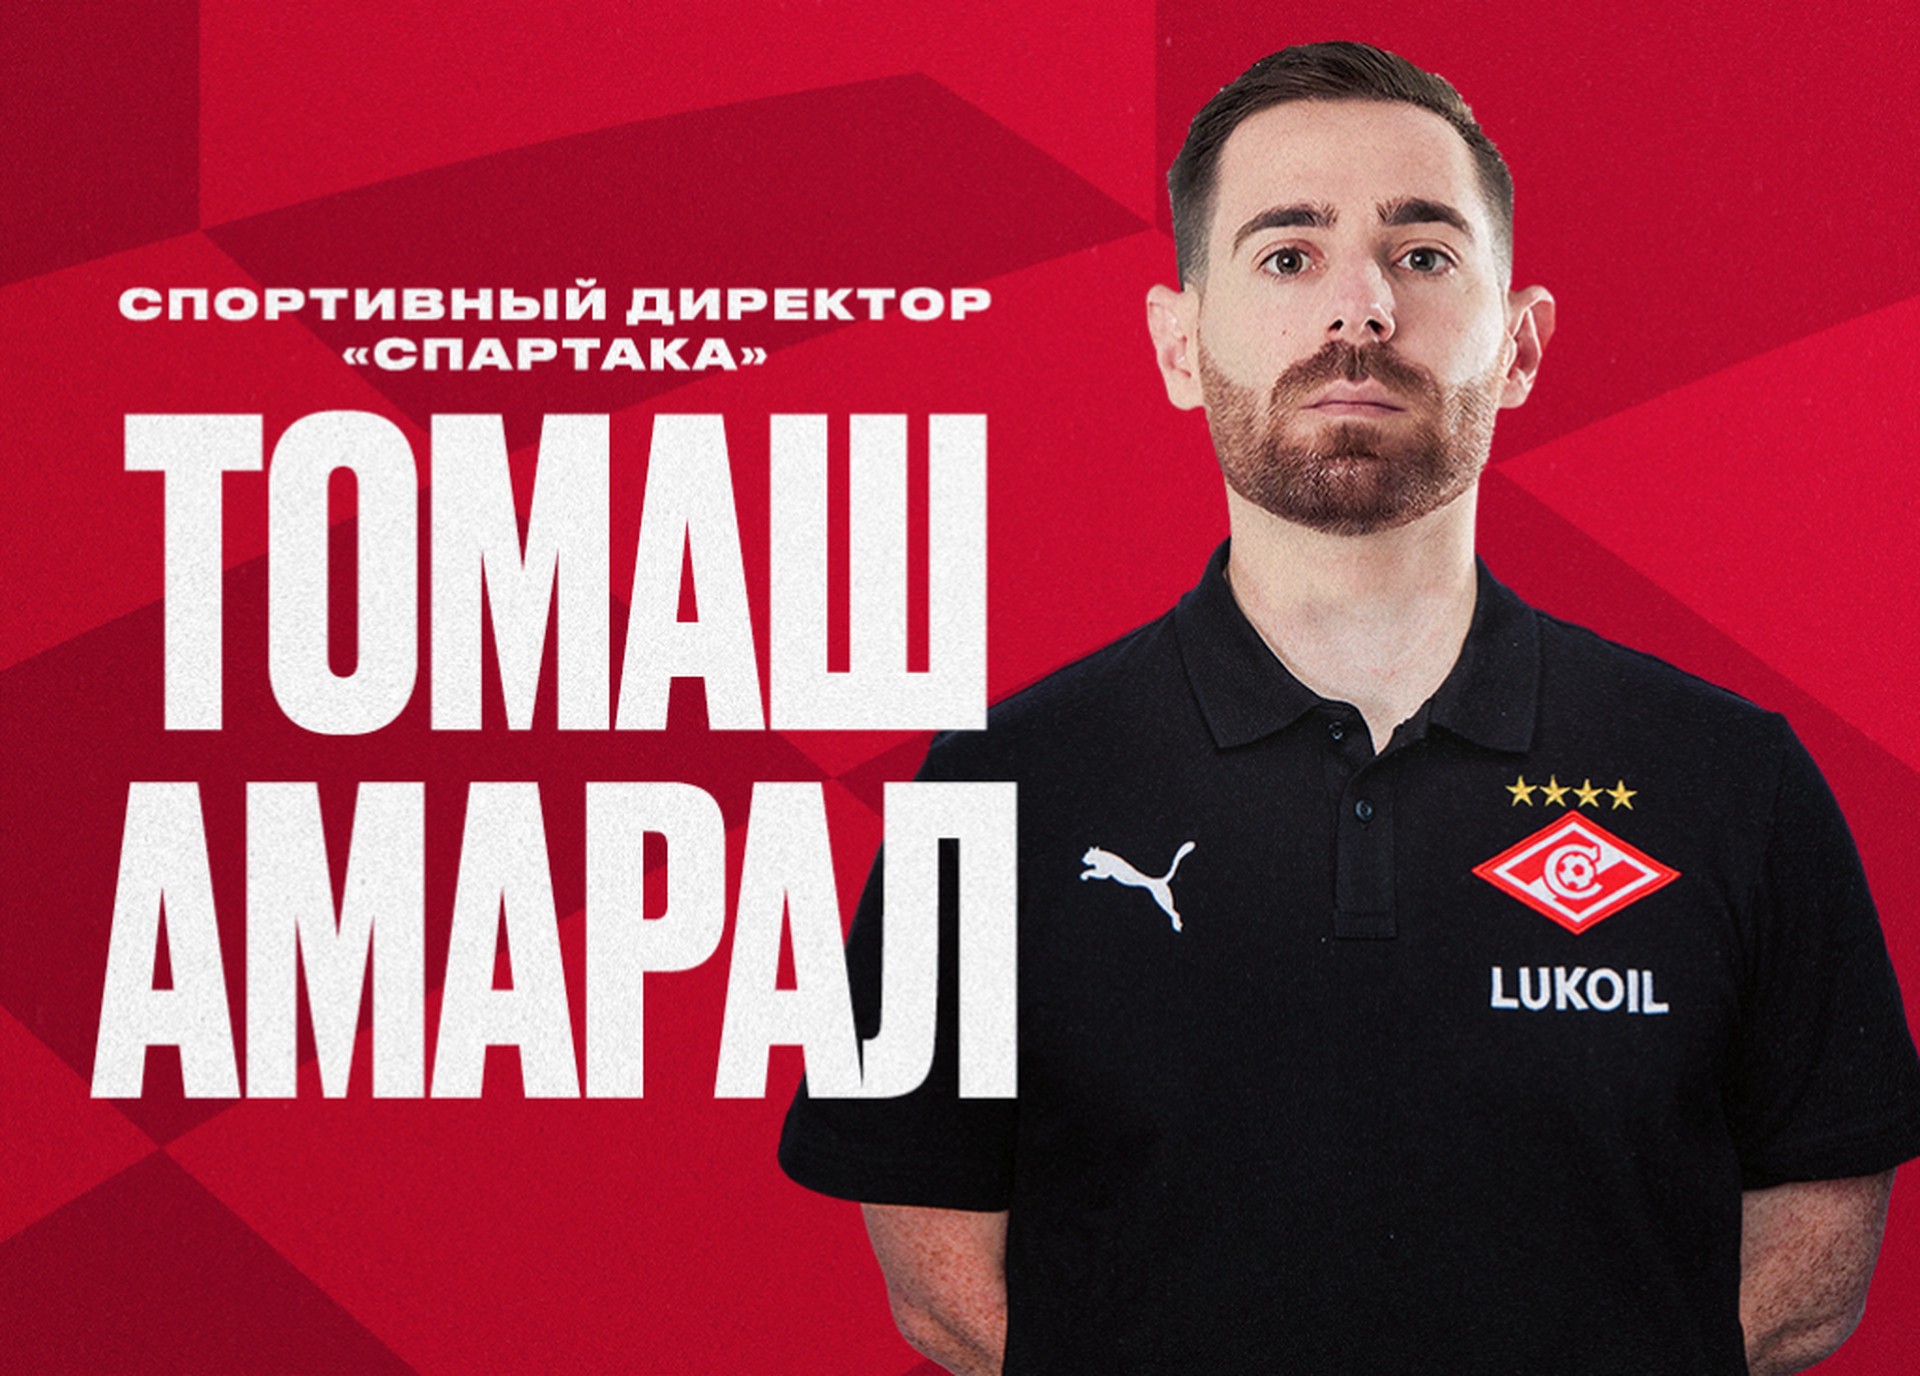 «Спартак» объявил о назначении Томаша Амарала на должность спортивного директора